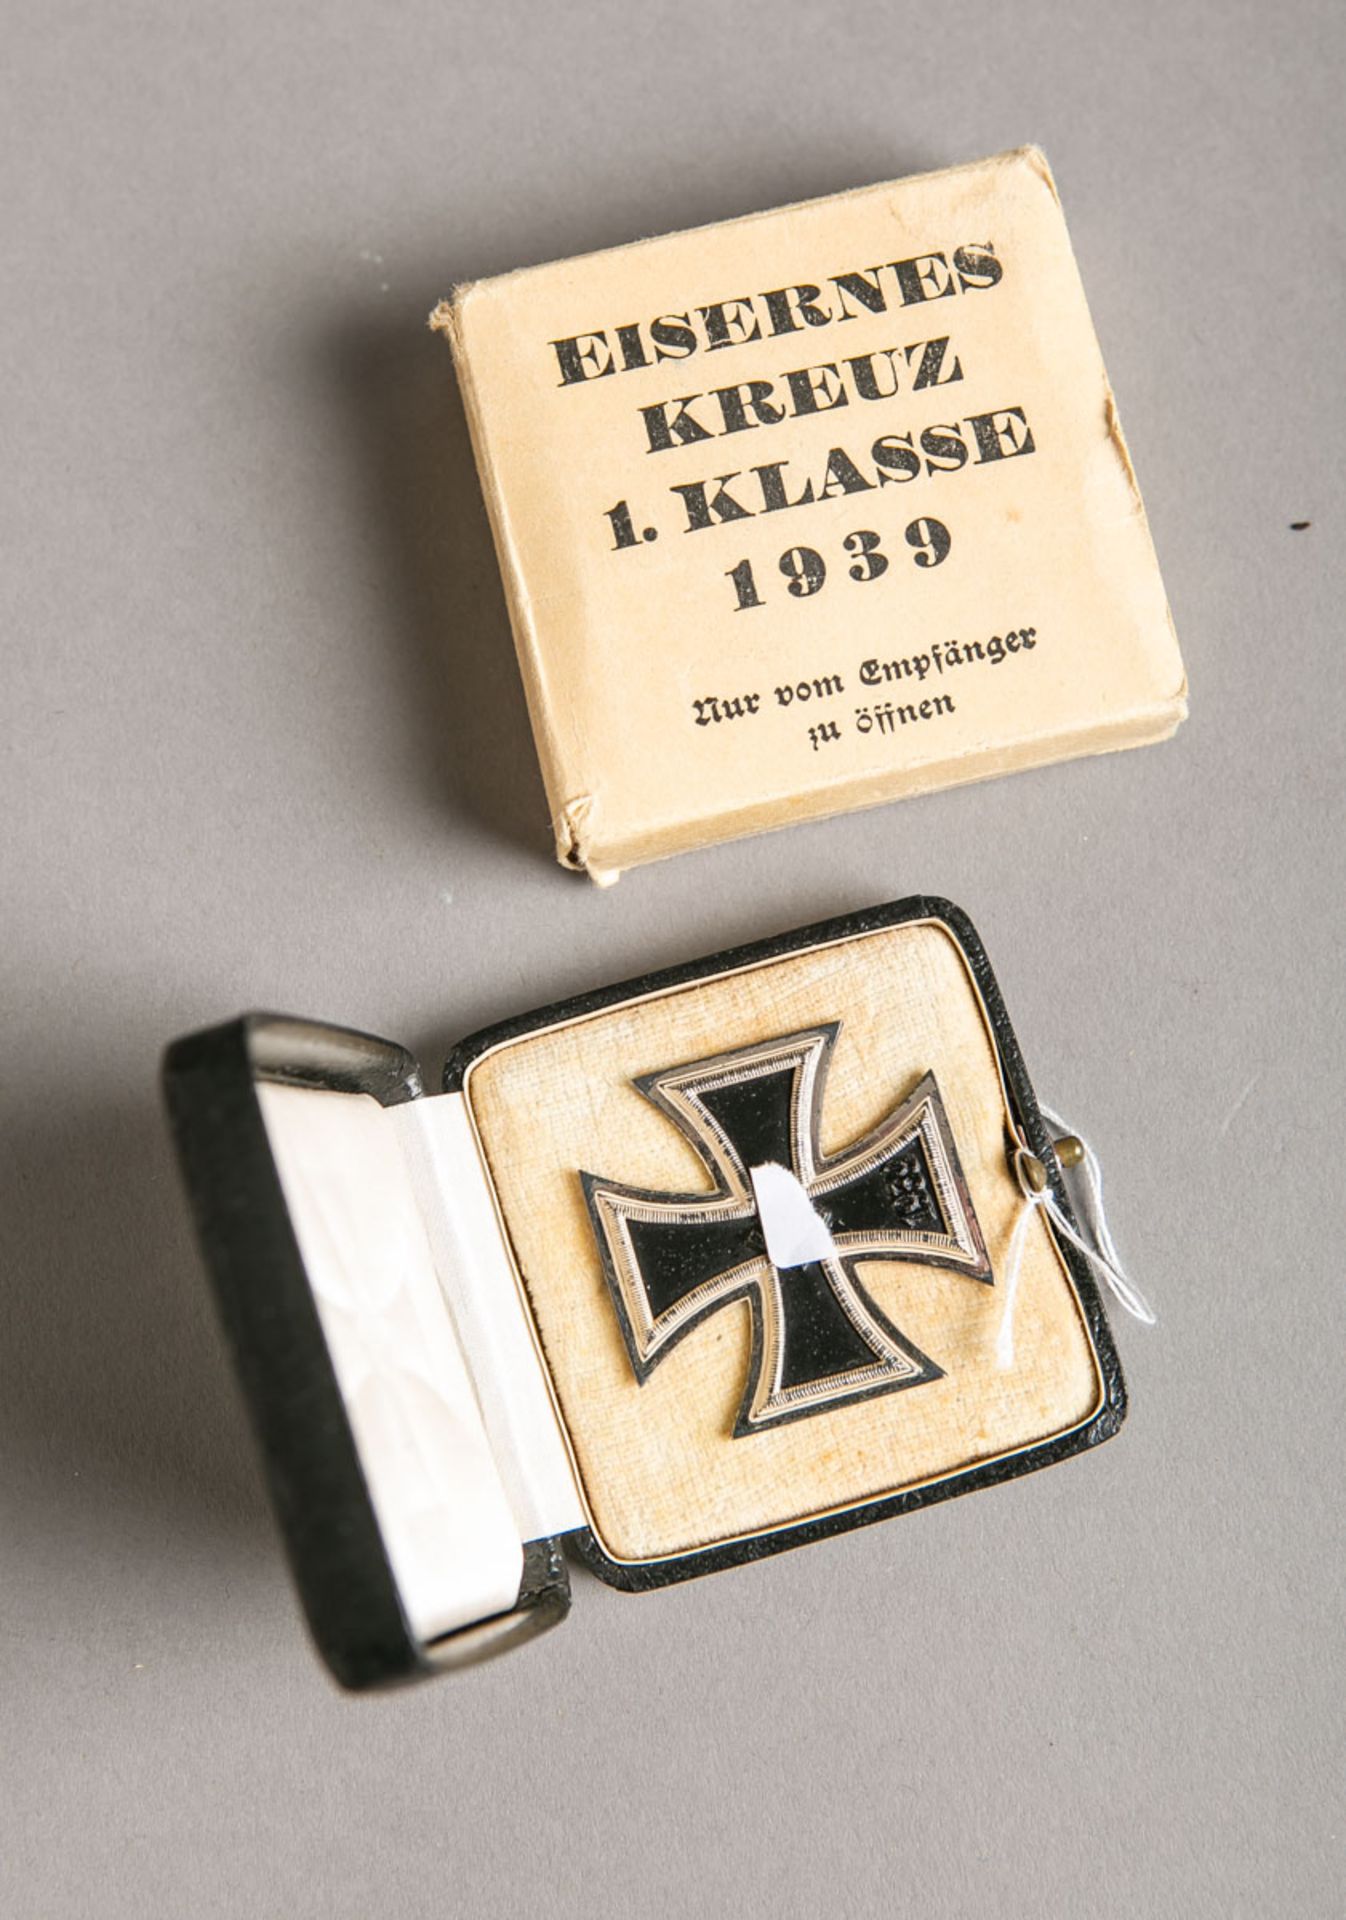 Eisernes Kreuz (2. WK, Drittes Reich)